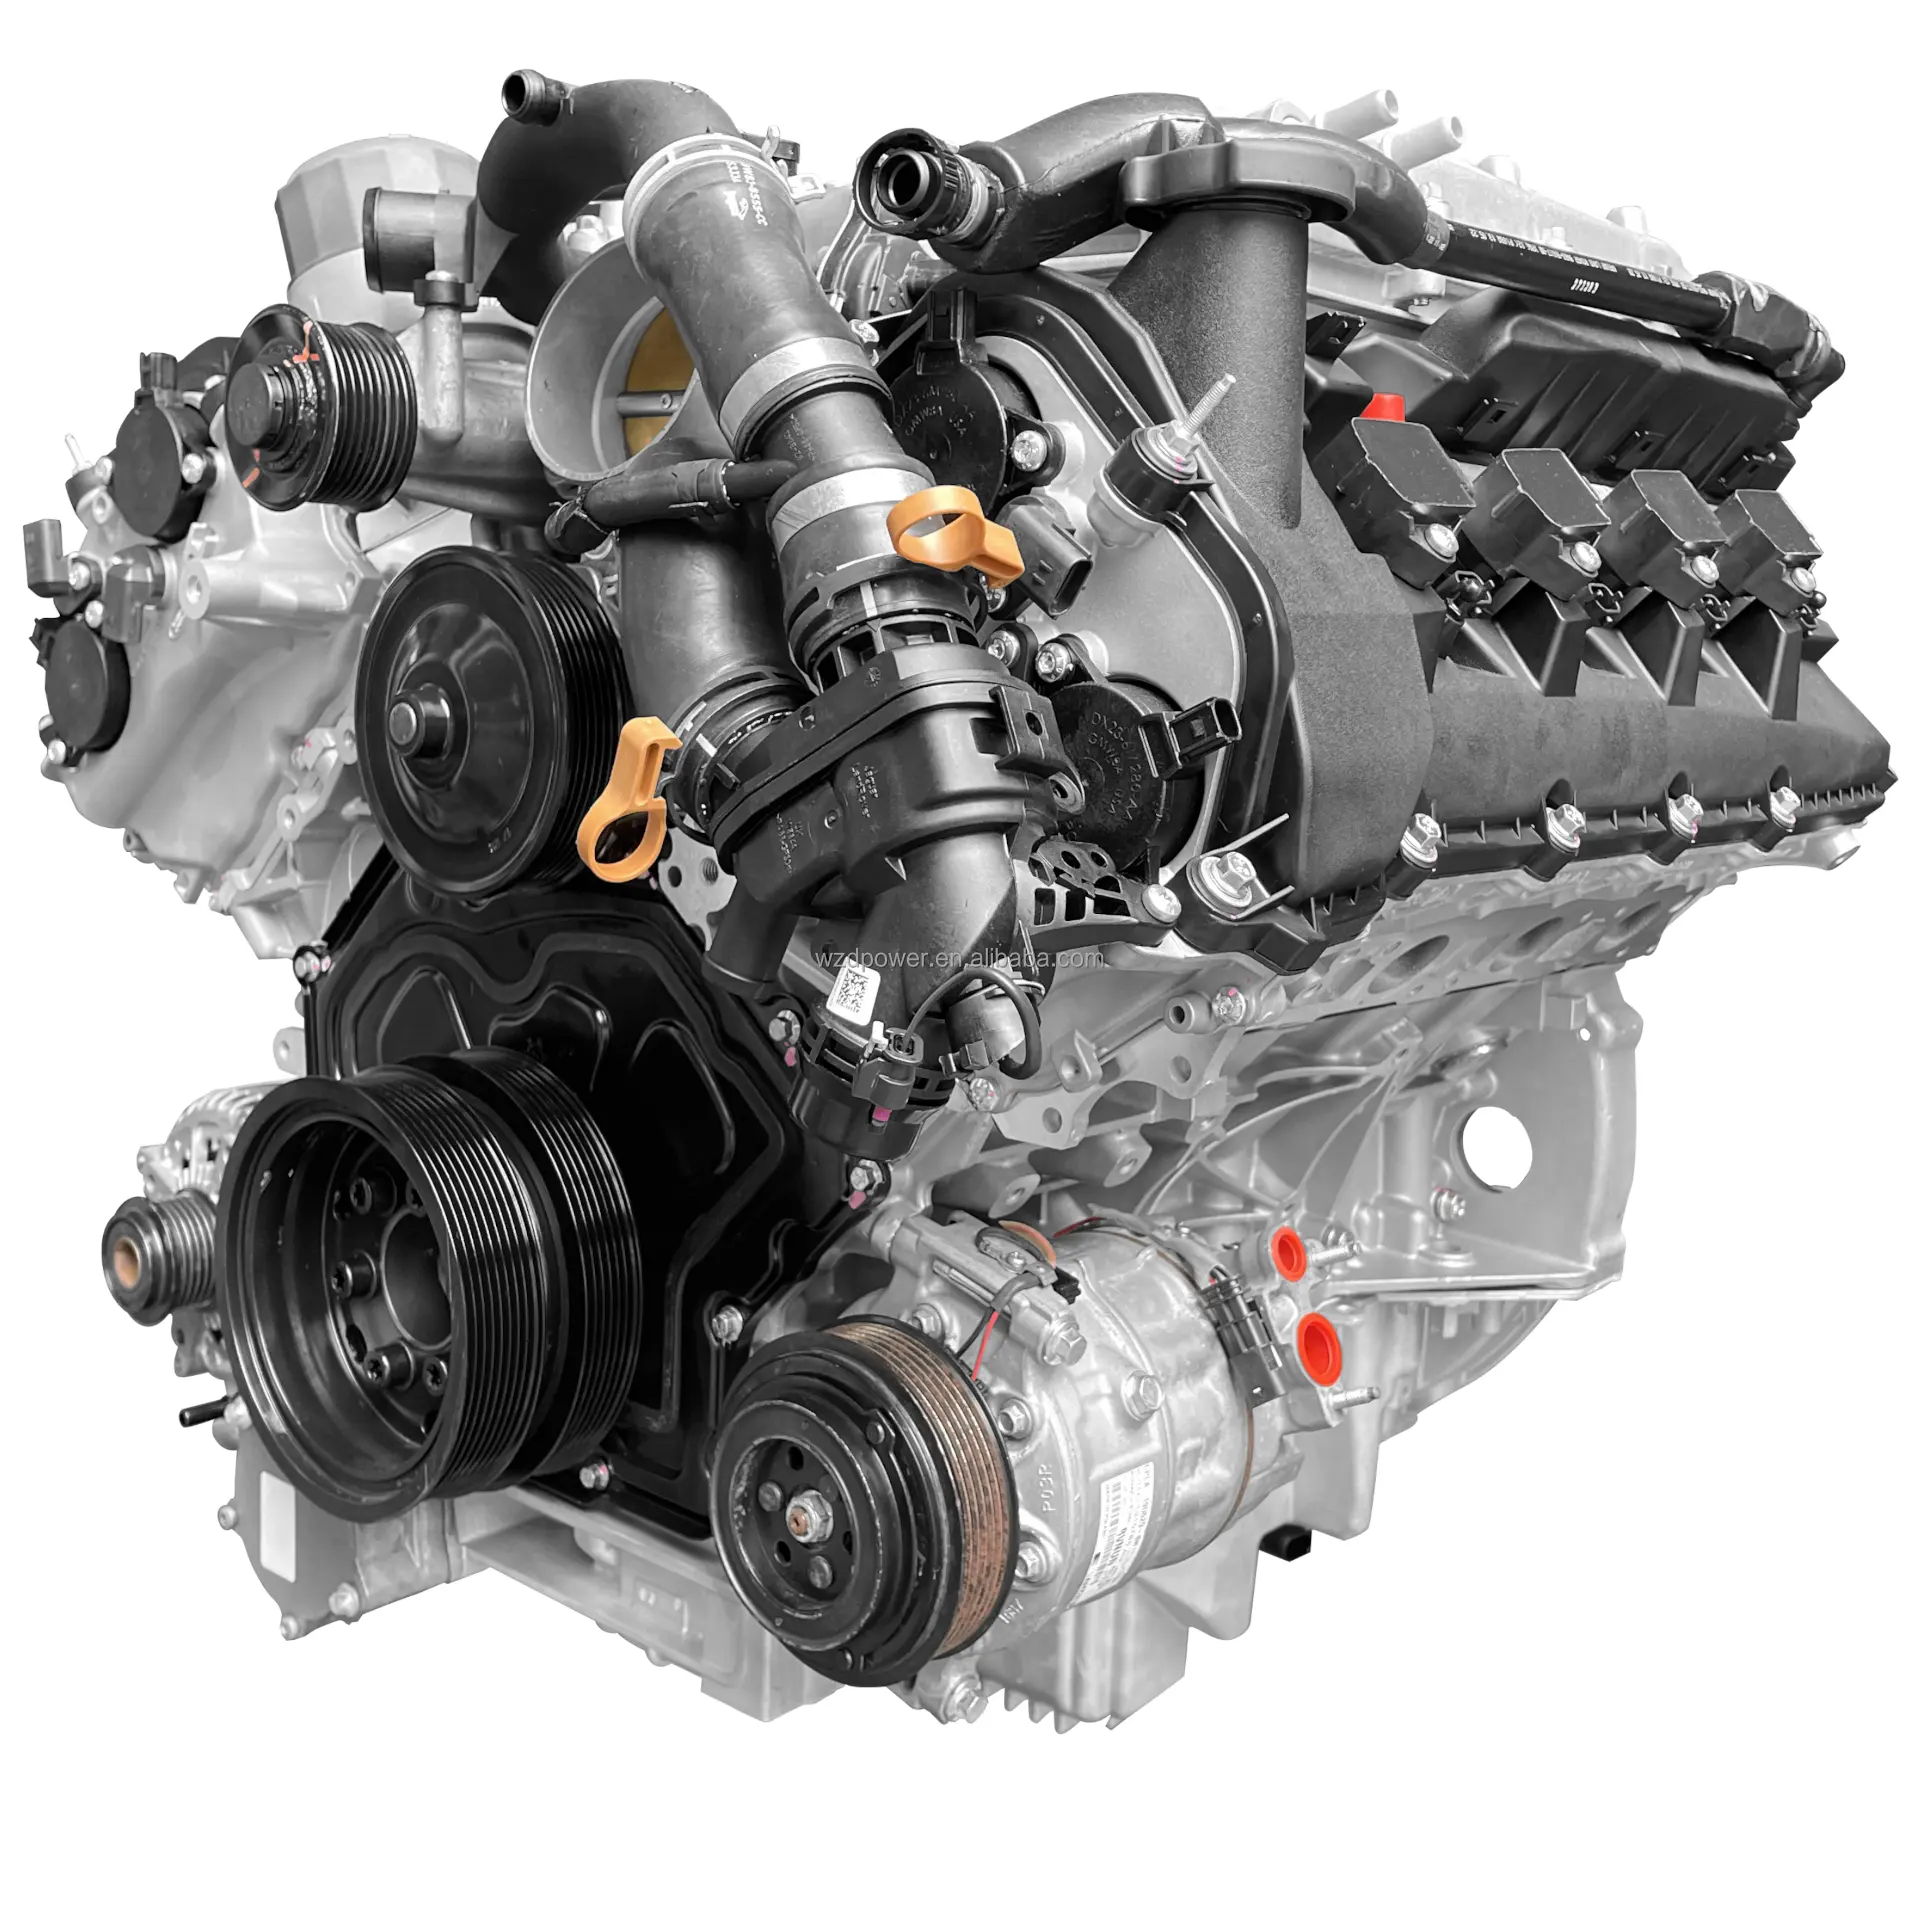 Ventas calientes Motor de coche 508PS V8 5,0 Motor de gasolina de sobrealimentación para Land Rover y Jaguar V6 3,0 T 5,0 T Motor